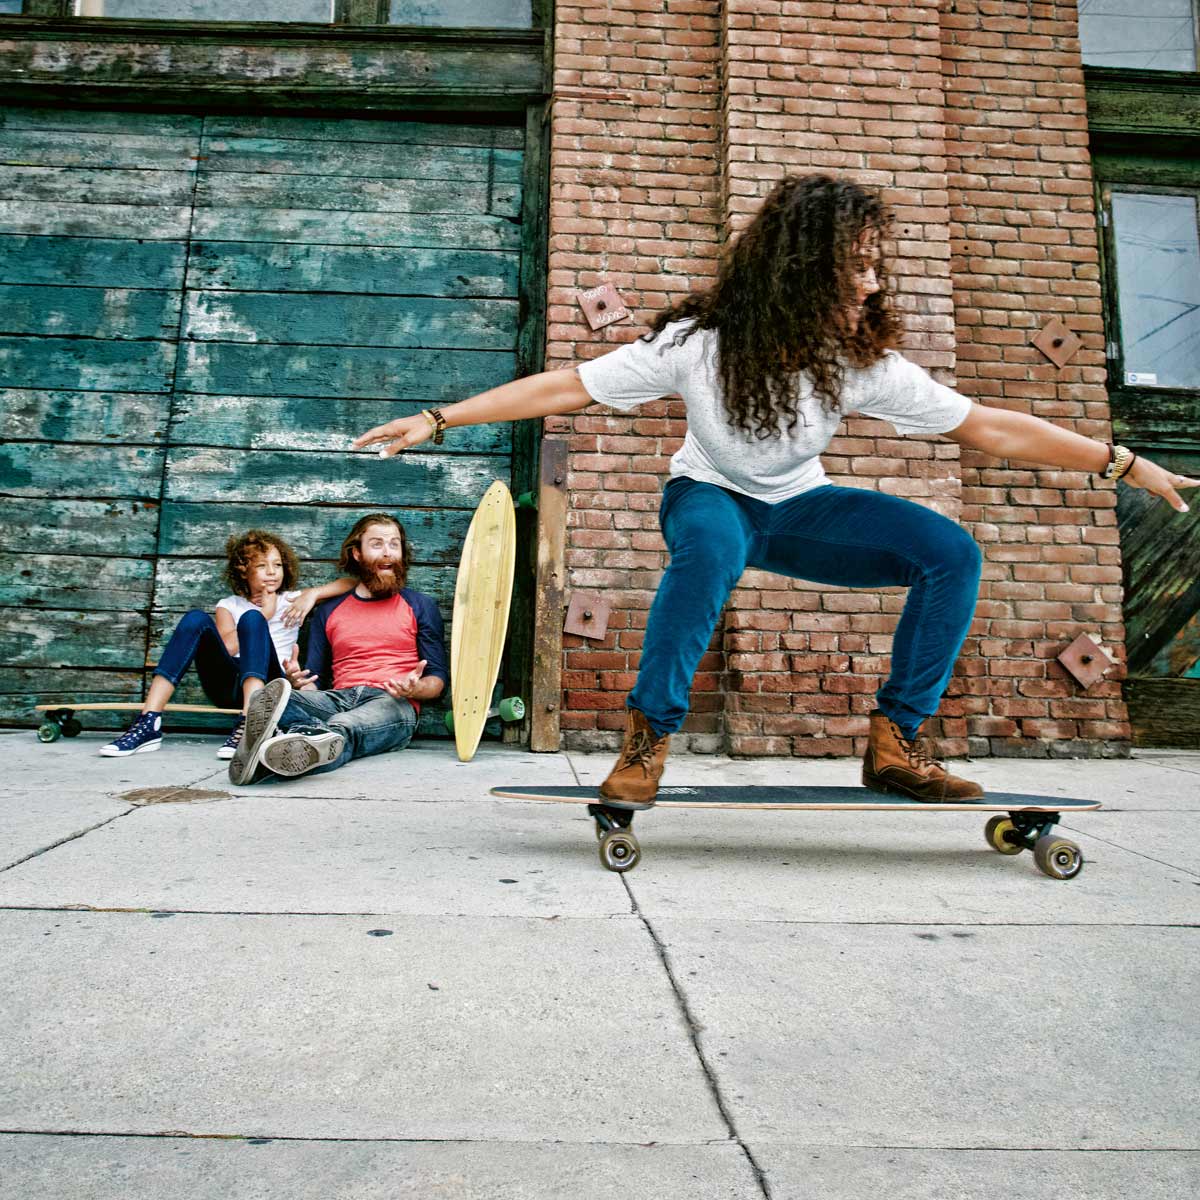 Eine Skaterin bewegt sich lachend und unbeschwert auf ihrem Skateboard.